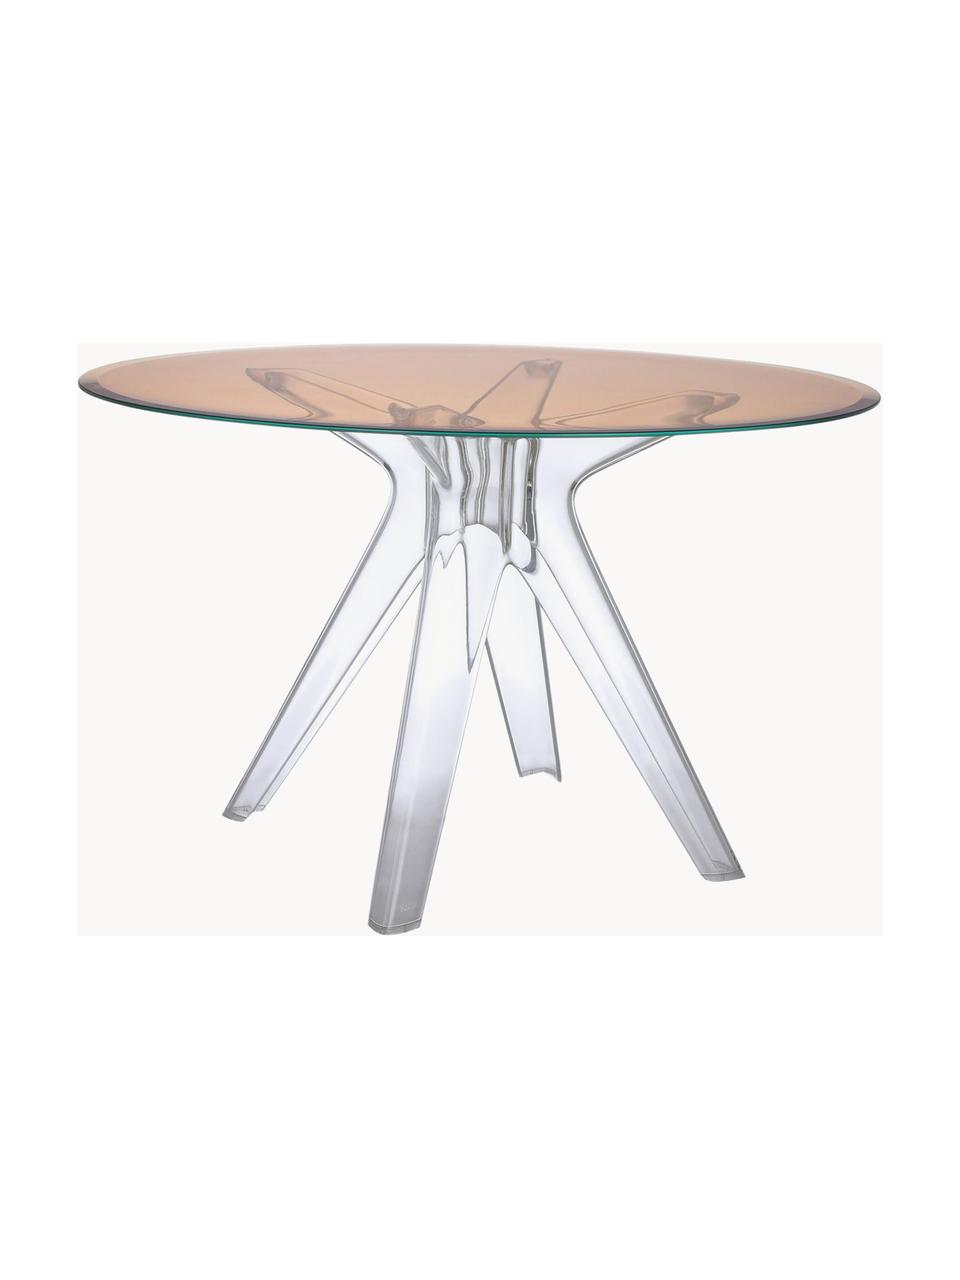 Stół do jadalni Sir Gio, Blat: szkło laminowane, Stelaż: tworzywo sztuczne, Blady różowy, transparentny, Ø 120 x W 72 cm